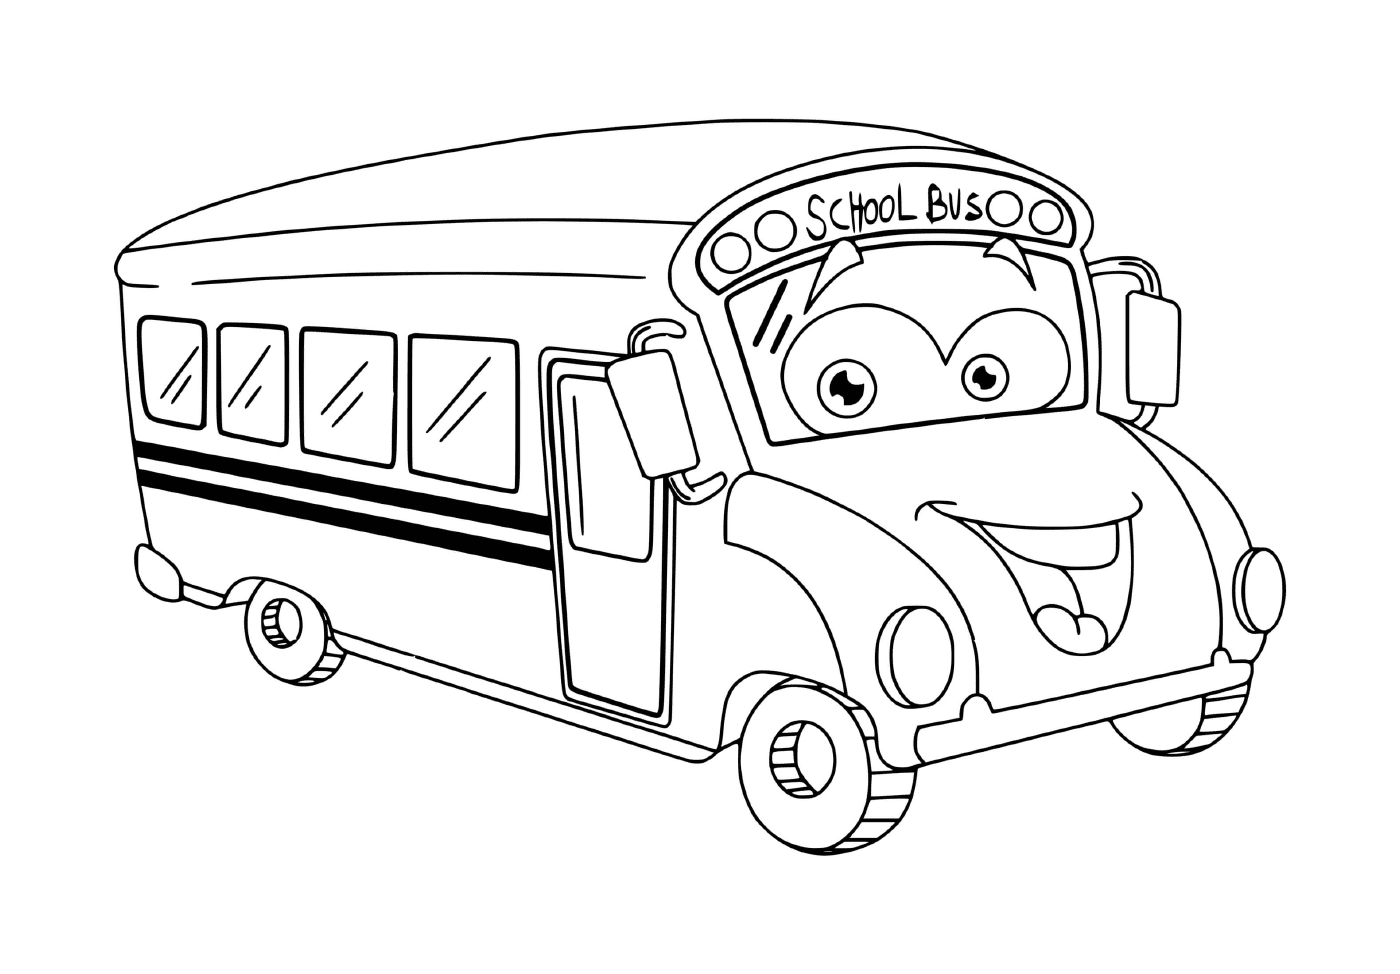  Um ônibus escolar para crianças 